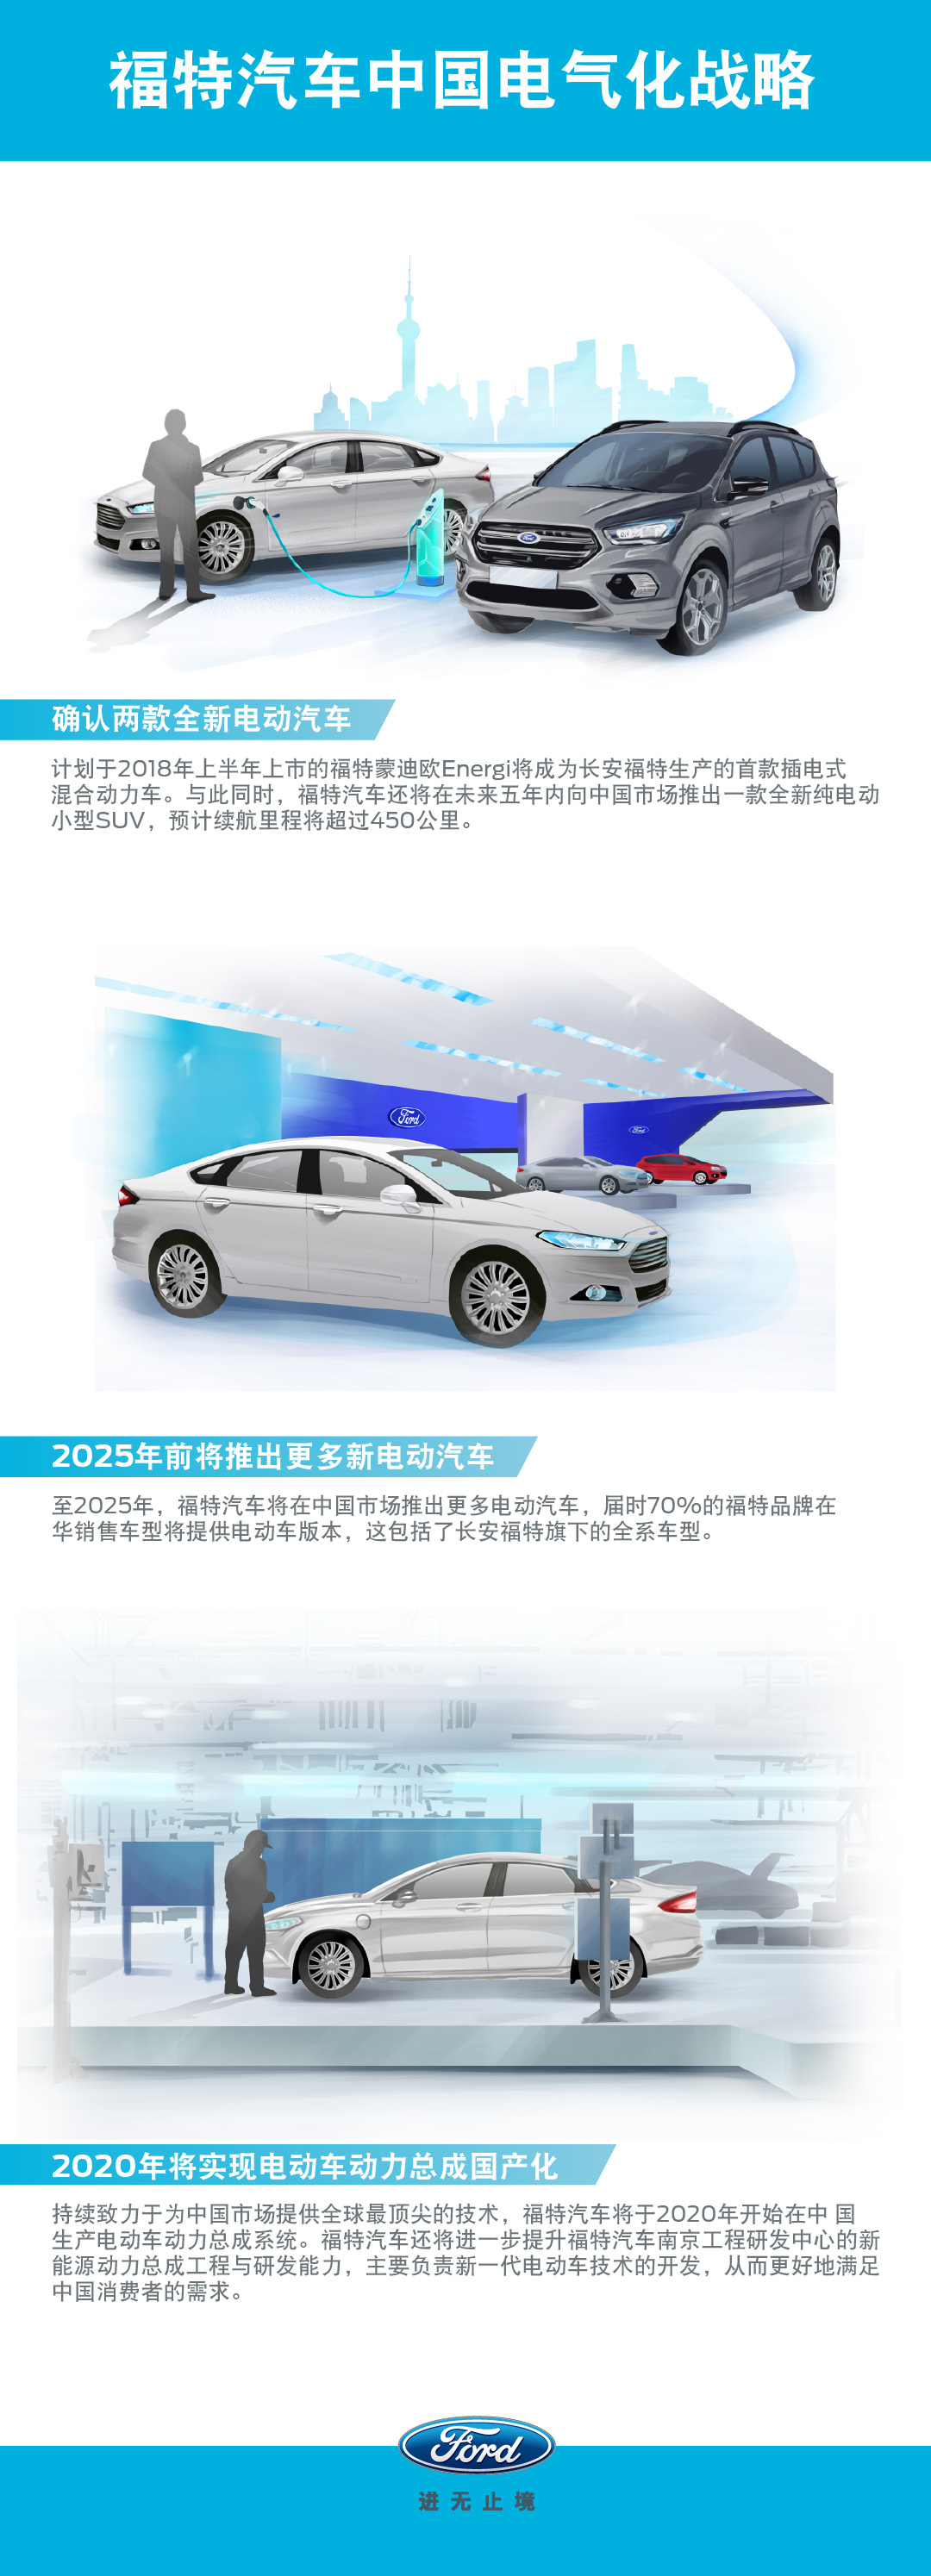 福特汽车宣布中国电气化战略 确定将在中国推出两款全新电动汽车 并在25年前向中国市场推出更多新电动汽车 China Chinese